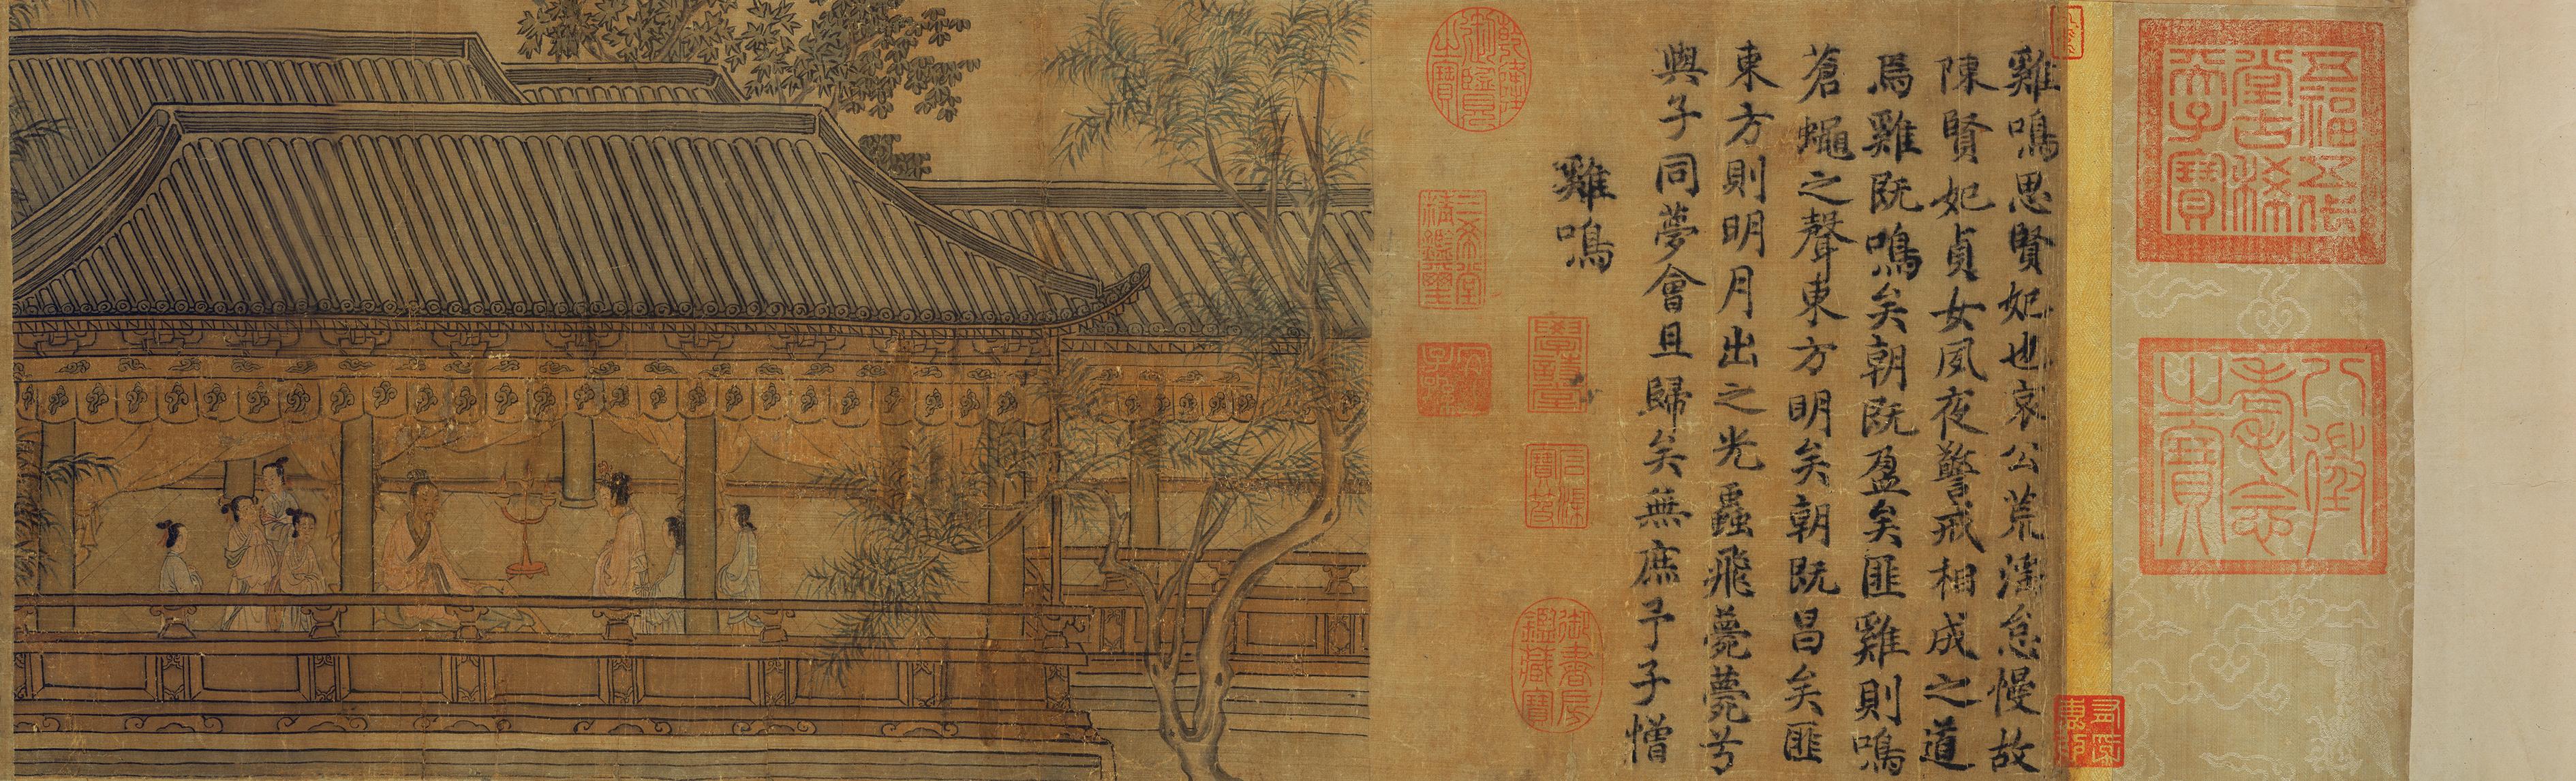 香港艺术馆虚白斋藏品《齐风六篇》水墨绢本手卷，是据南宋画家马和之所绘的《诗经图》，以诗配图的形式，传达道德价值，甚具深意。图示《齐风六篇》（局部）。